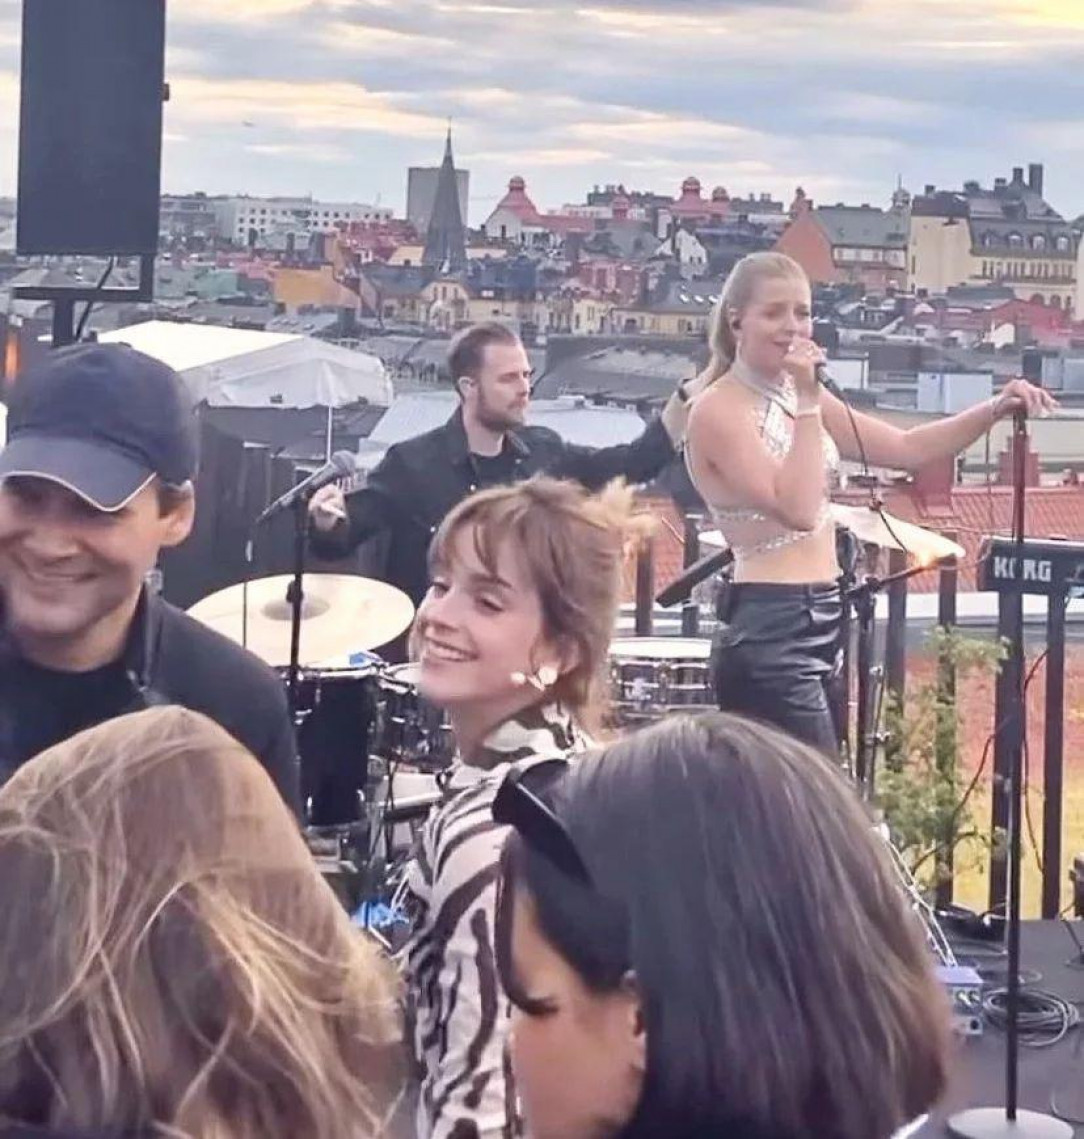 Emma in Stockholm?